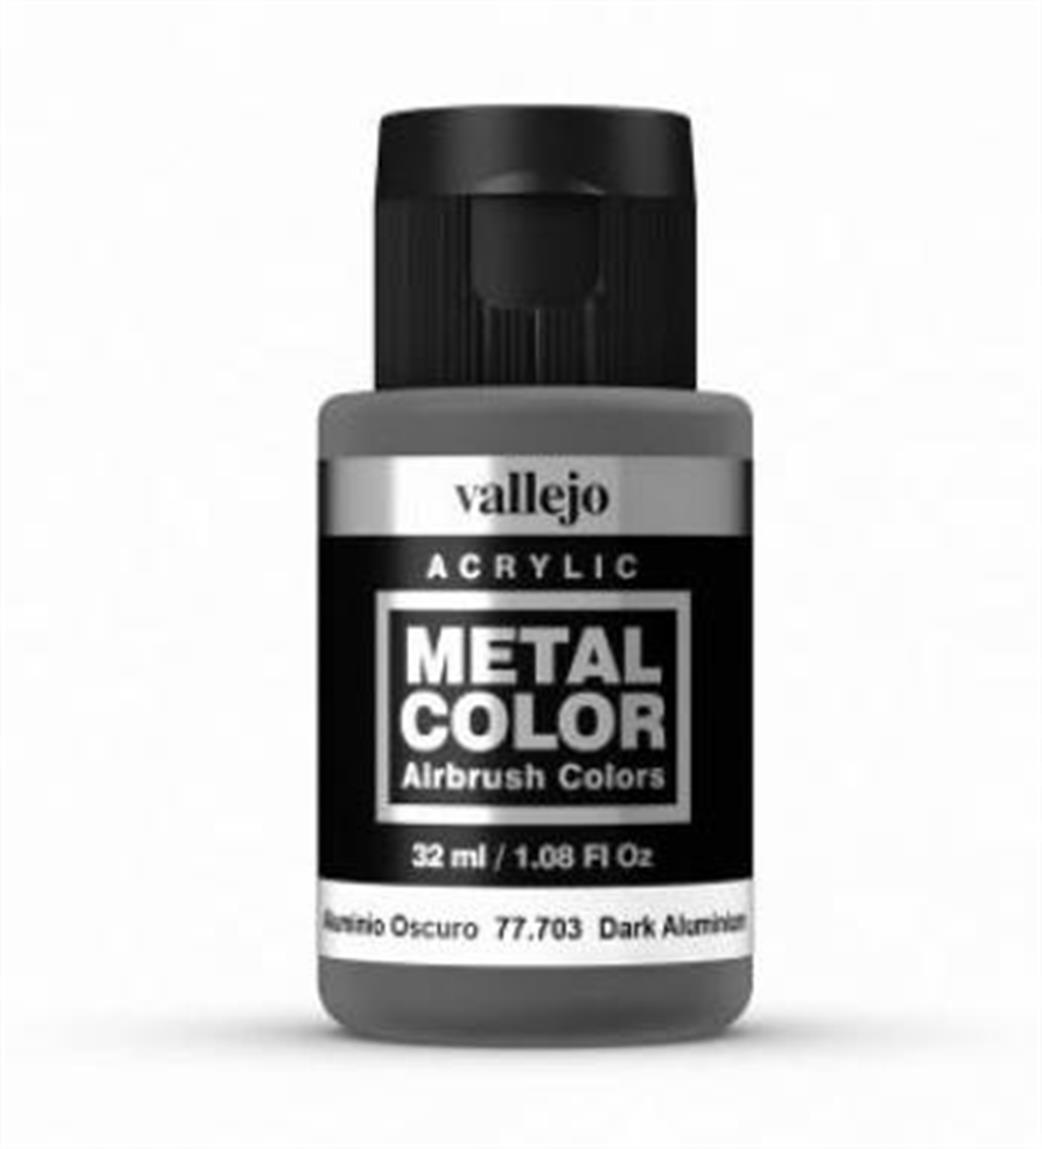 Vallejo 77703 Metal Color Dark Alumiuium Airbrush Color 32ml